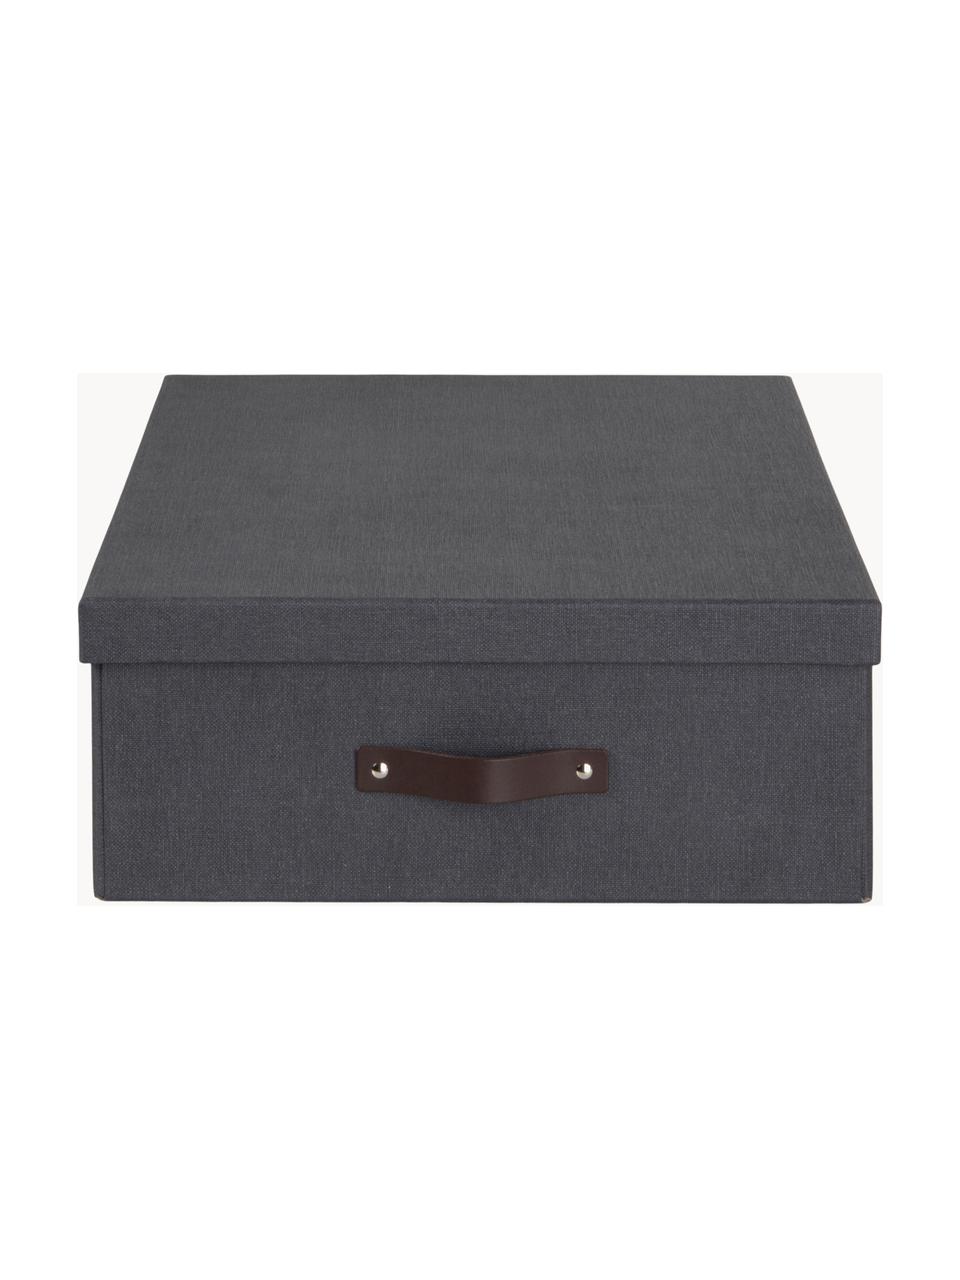 Pudełko d przechowywania Karolin, Antracytowy, ciemny brązowy, S 39 x G 56 cm